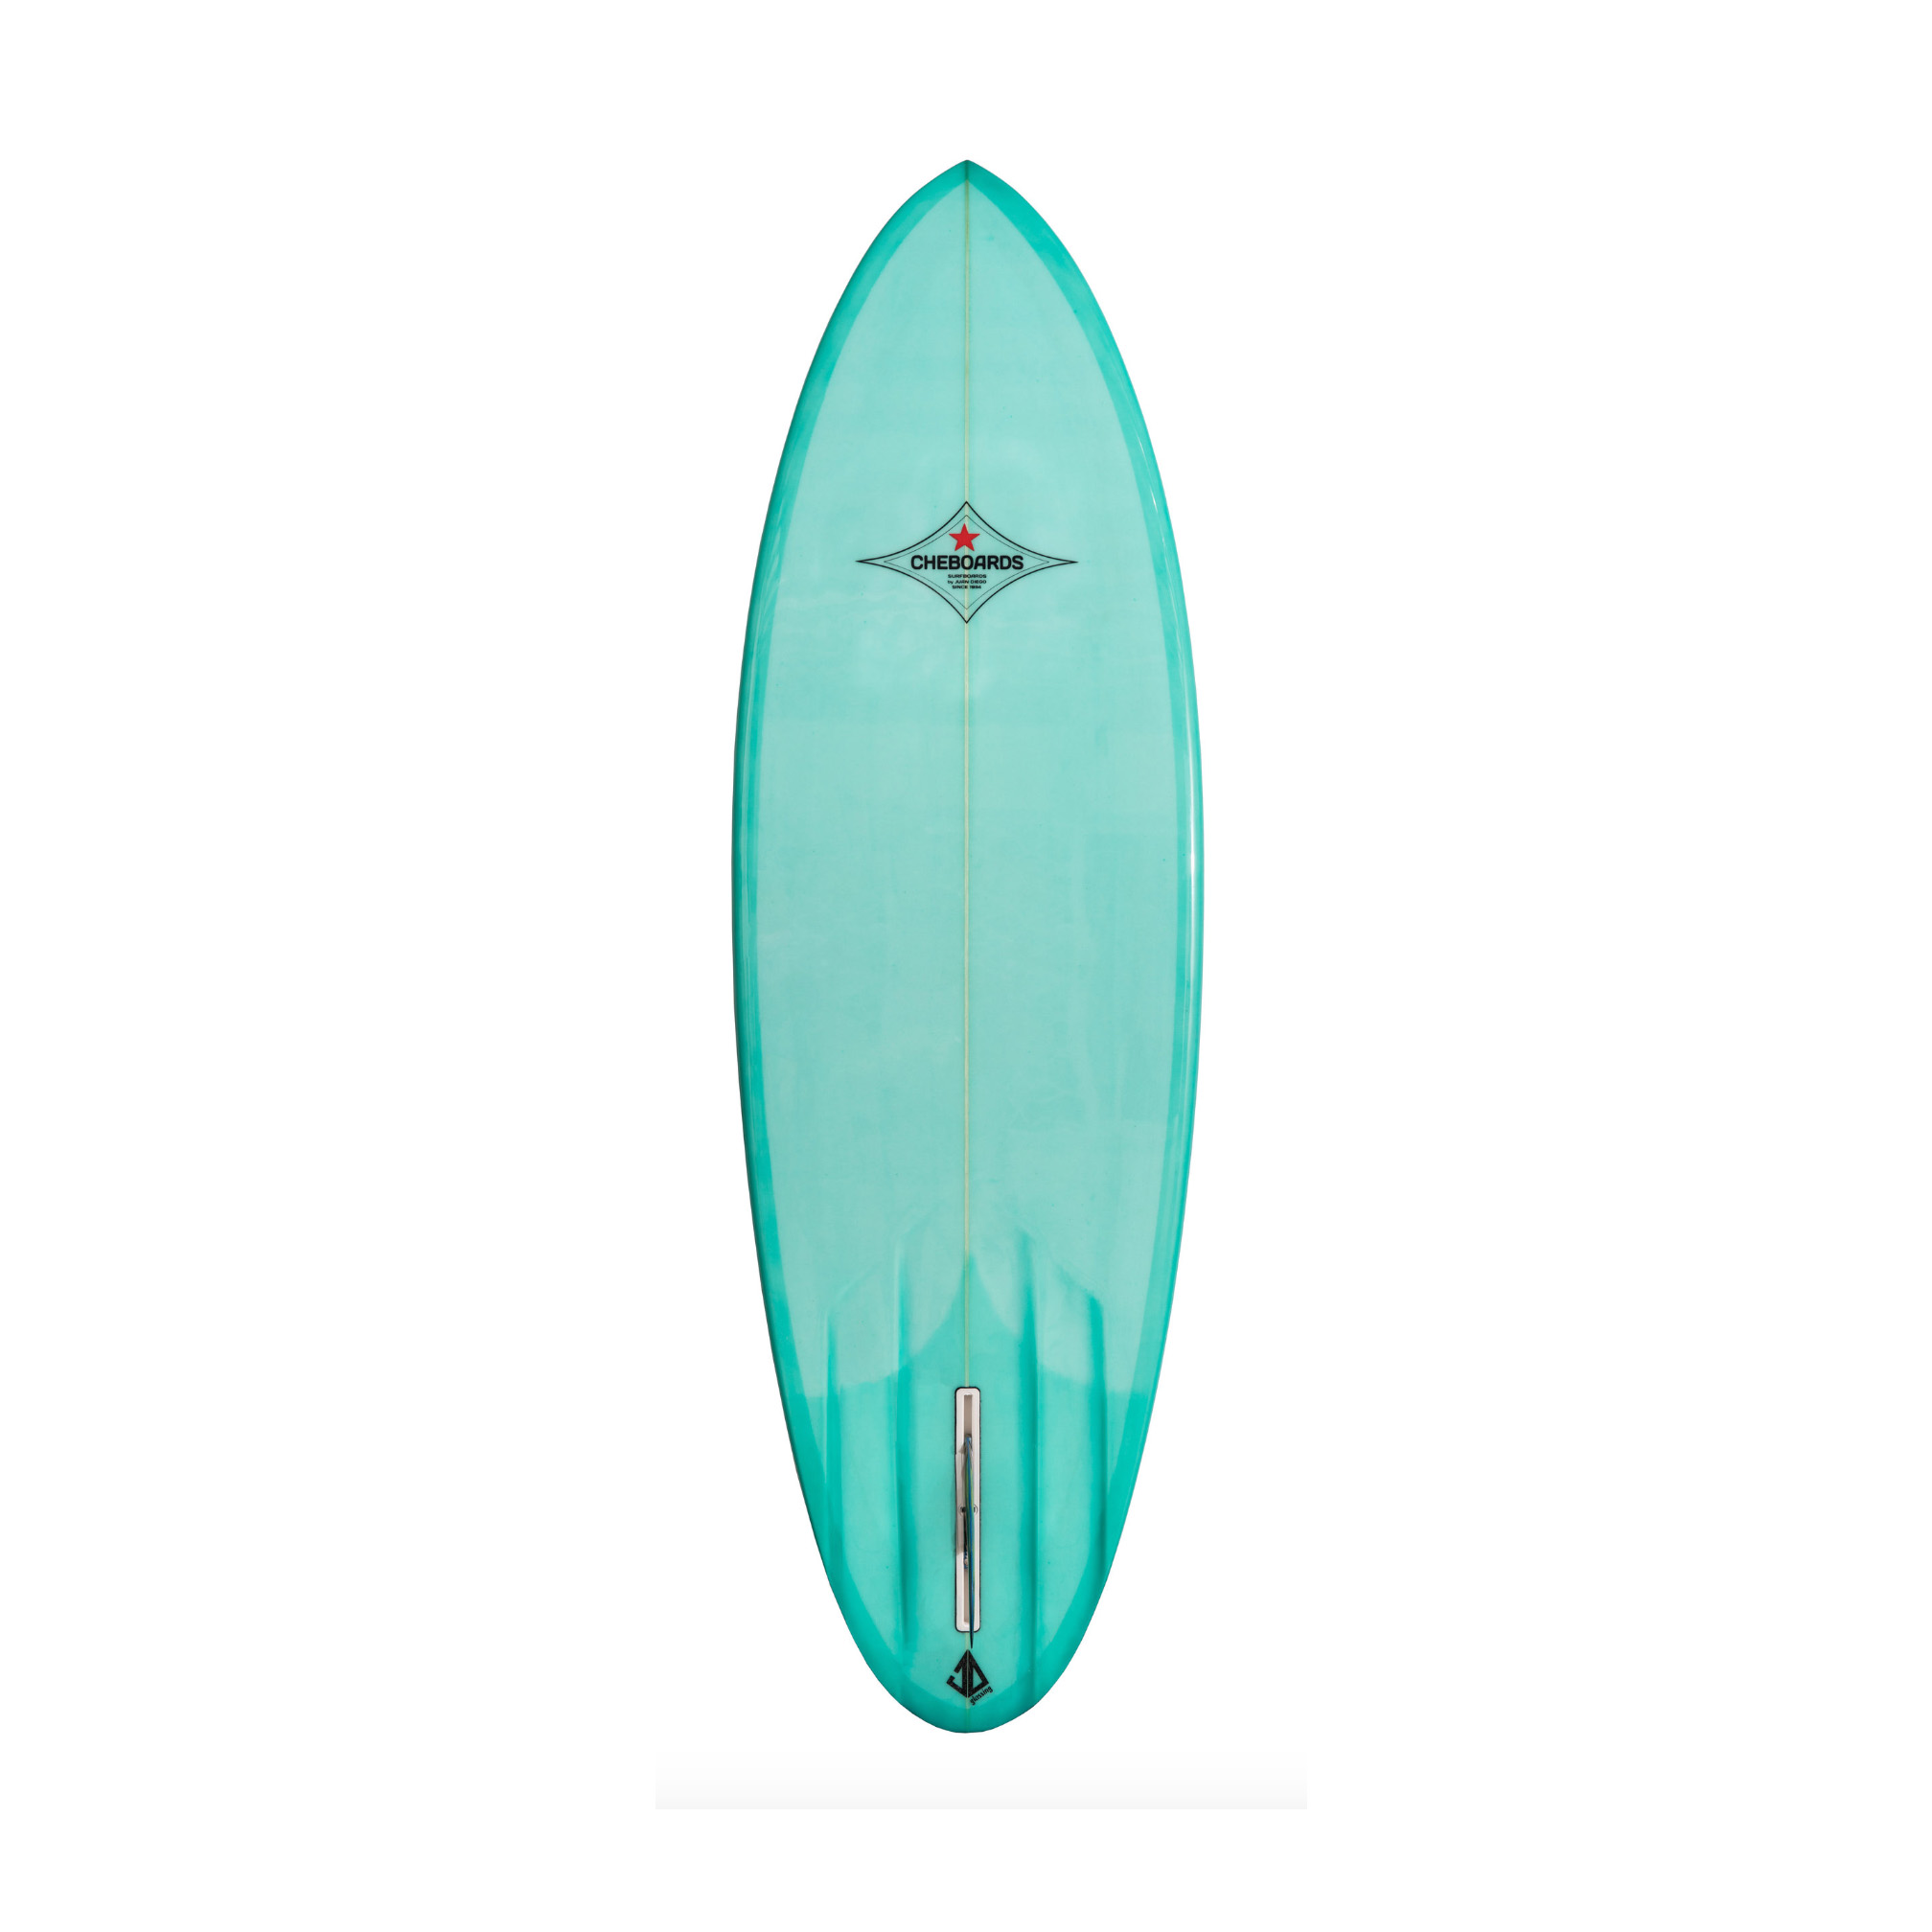 Vintage Single Fin Surfboard